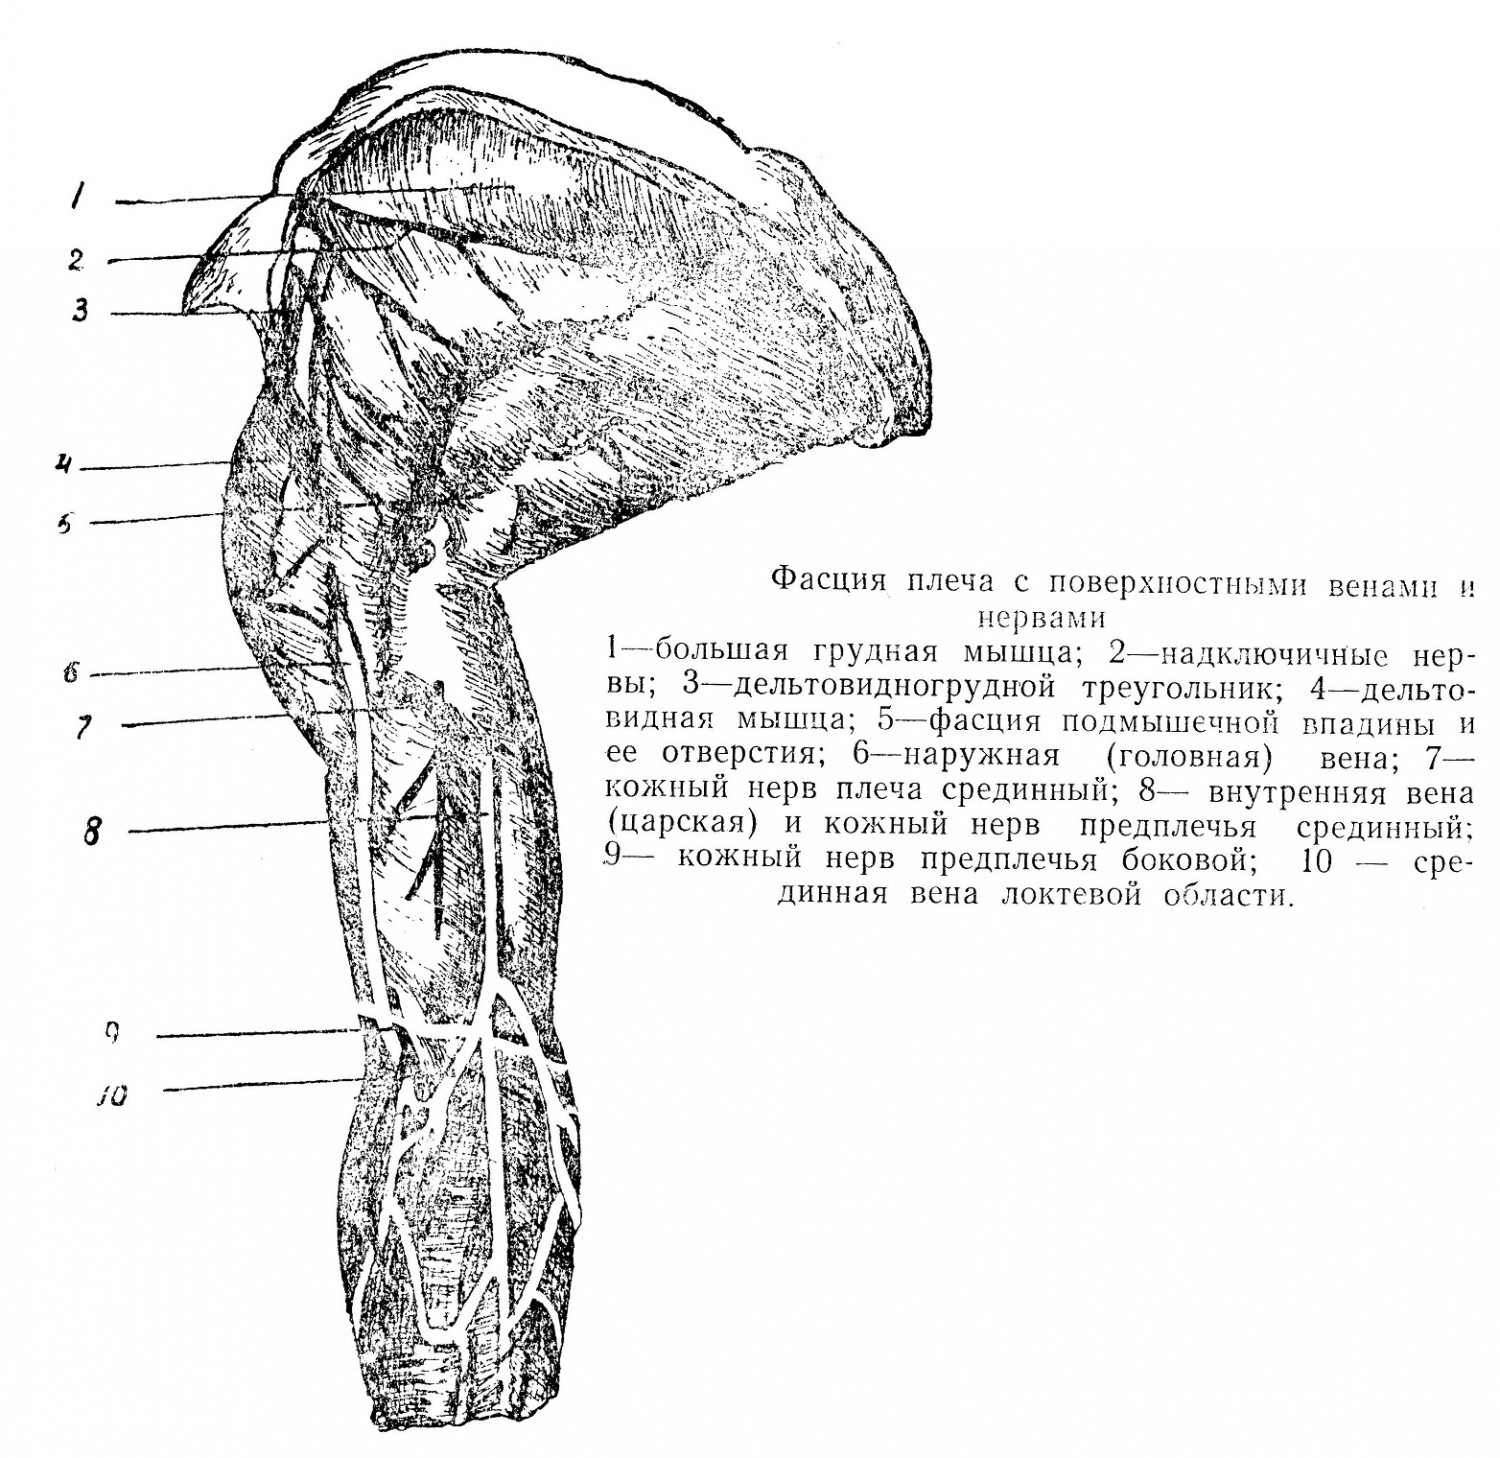 Фасция плеча с поверхностными венами и нервами